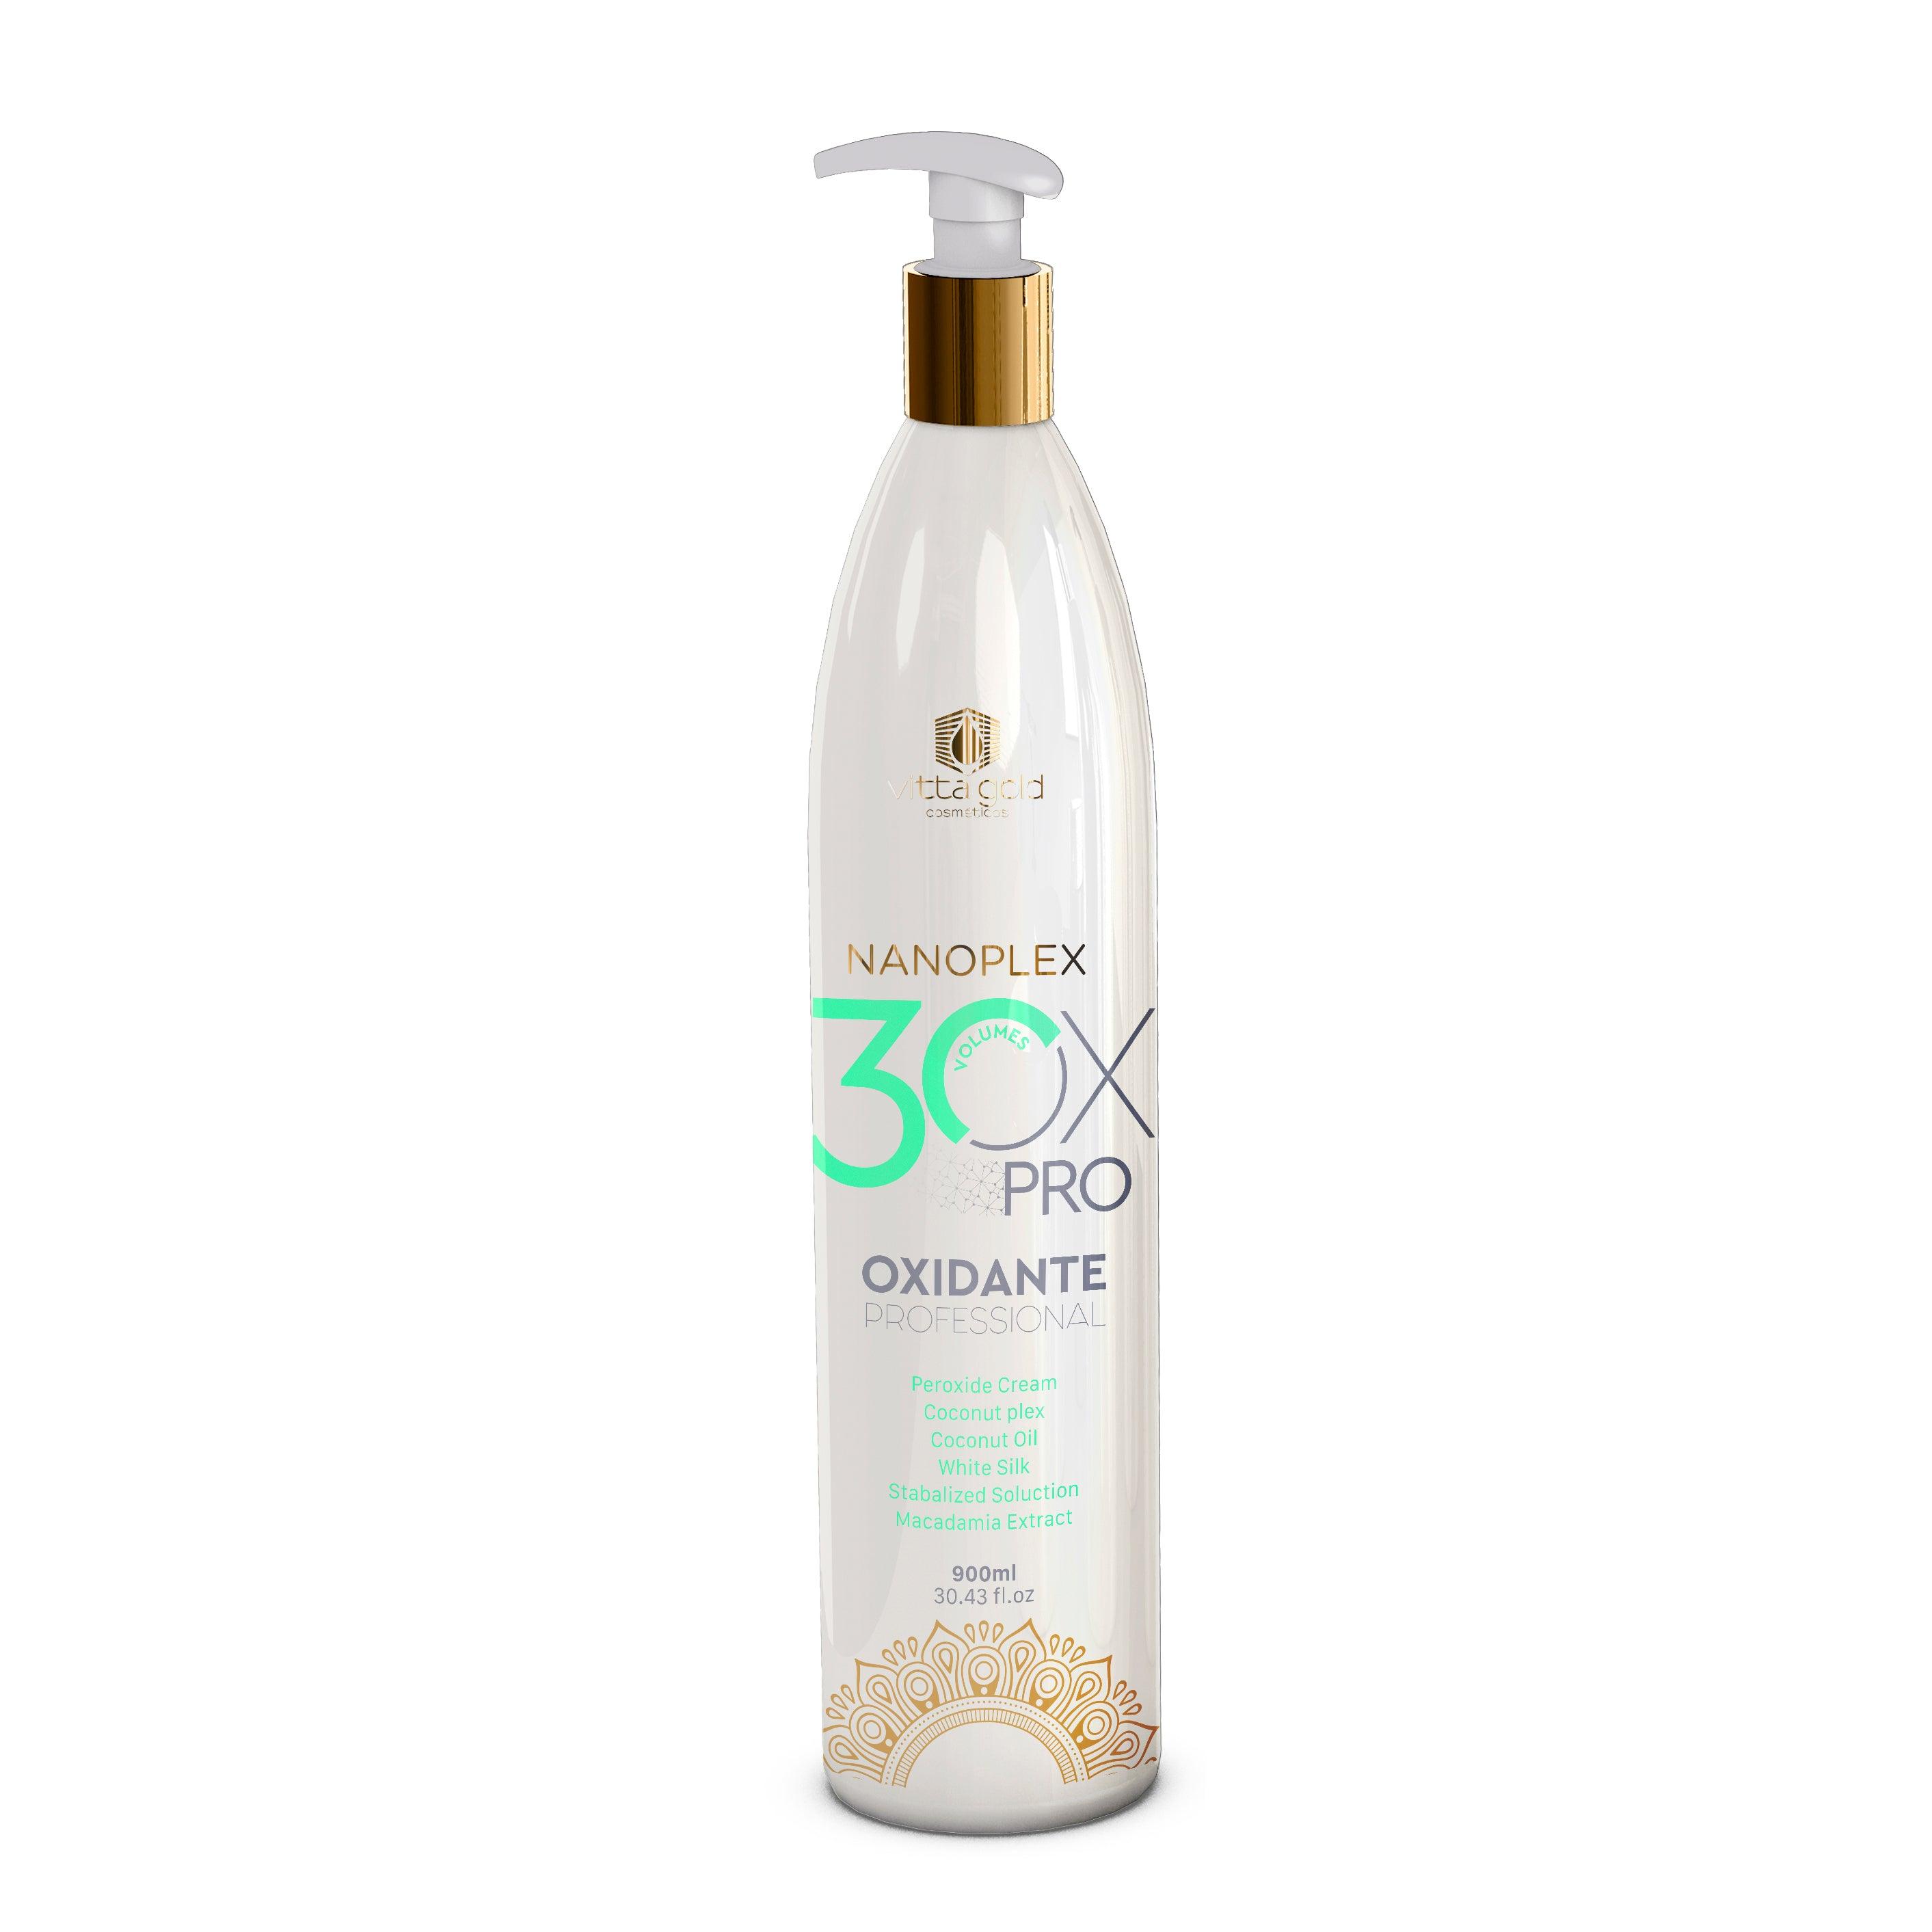 Nanoplex Peroxyde Crème OX - 30vol. Crème professionnelle oxydante pour les cheveux -Proxide-Vitta Gold